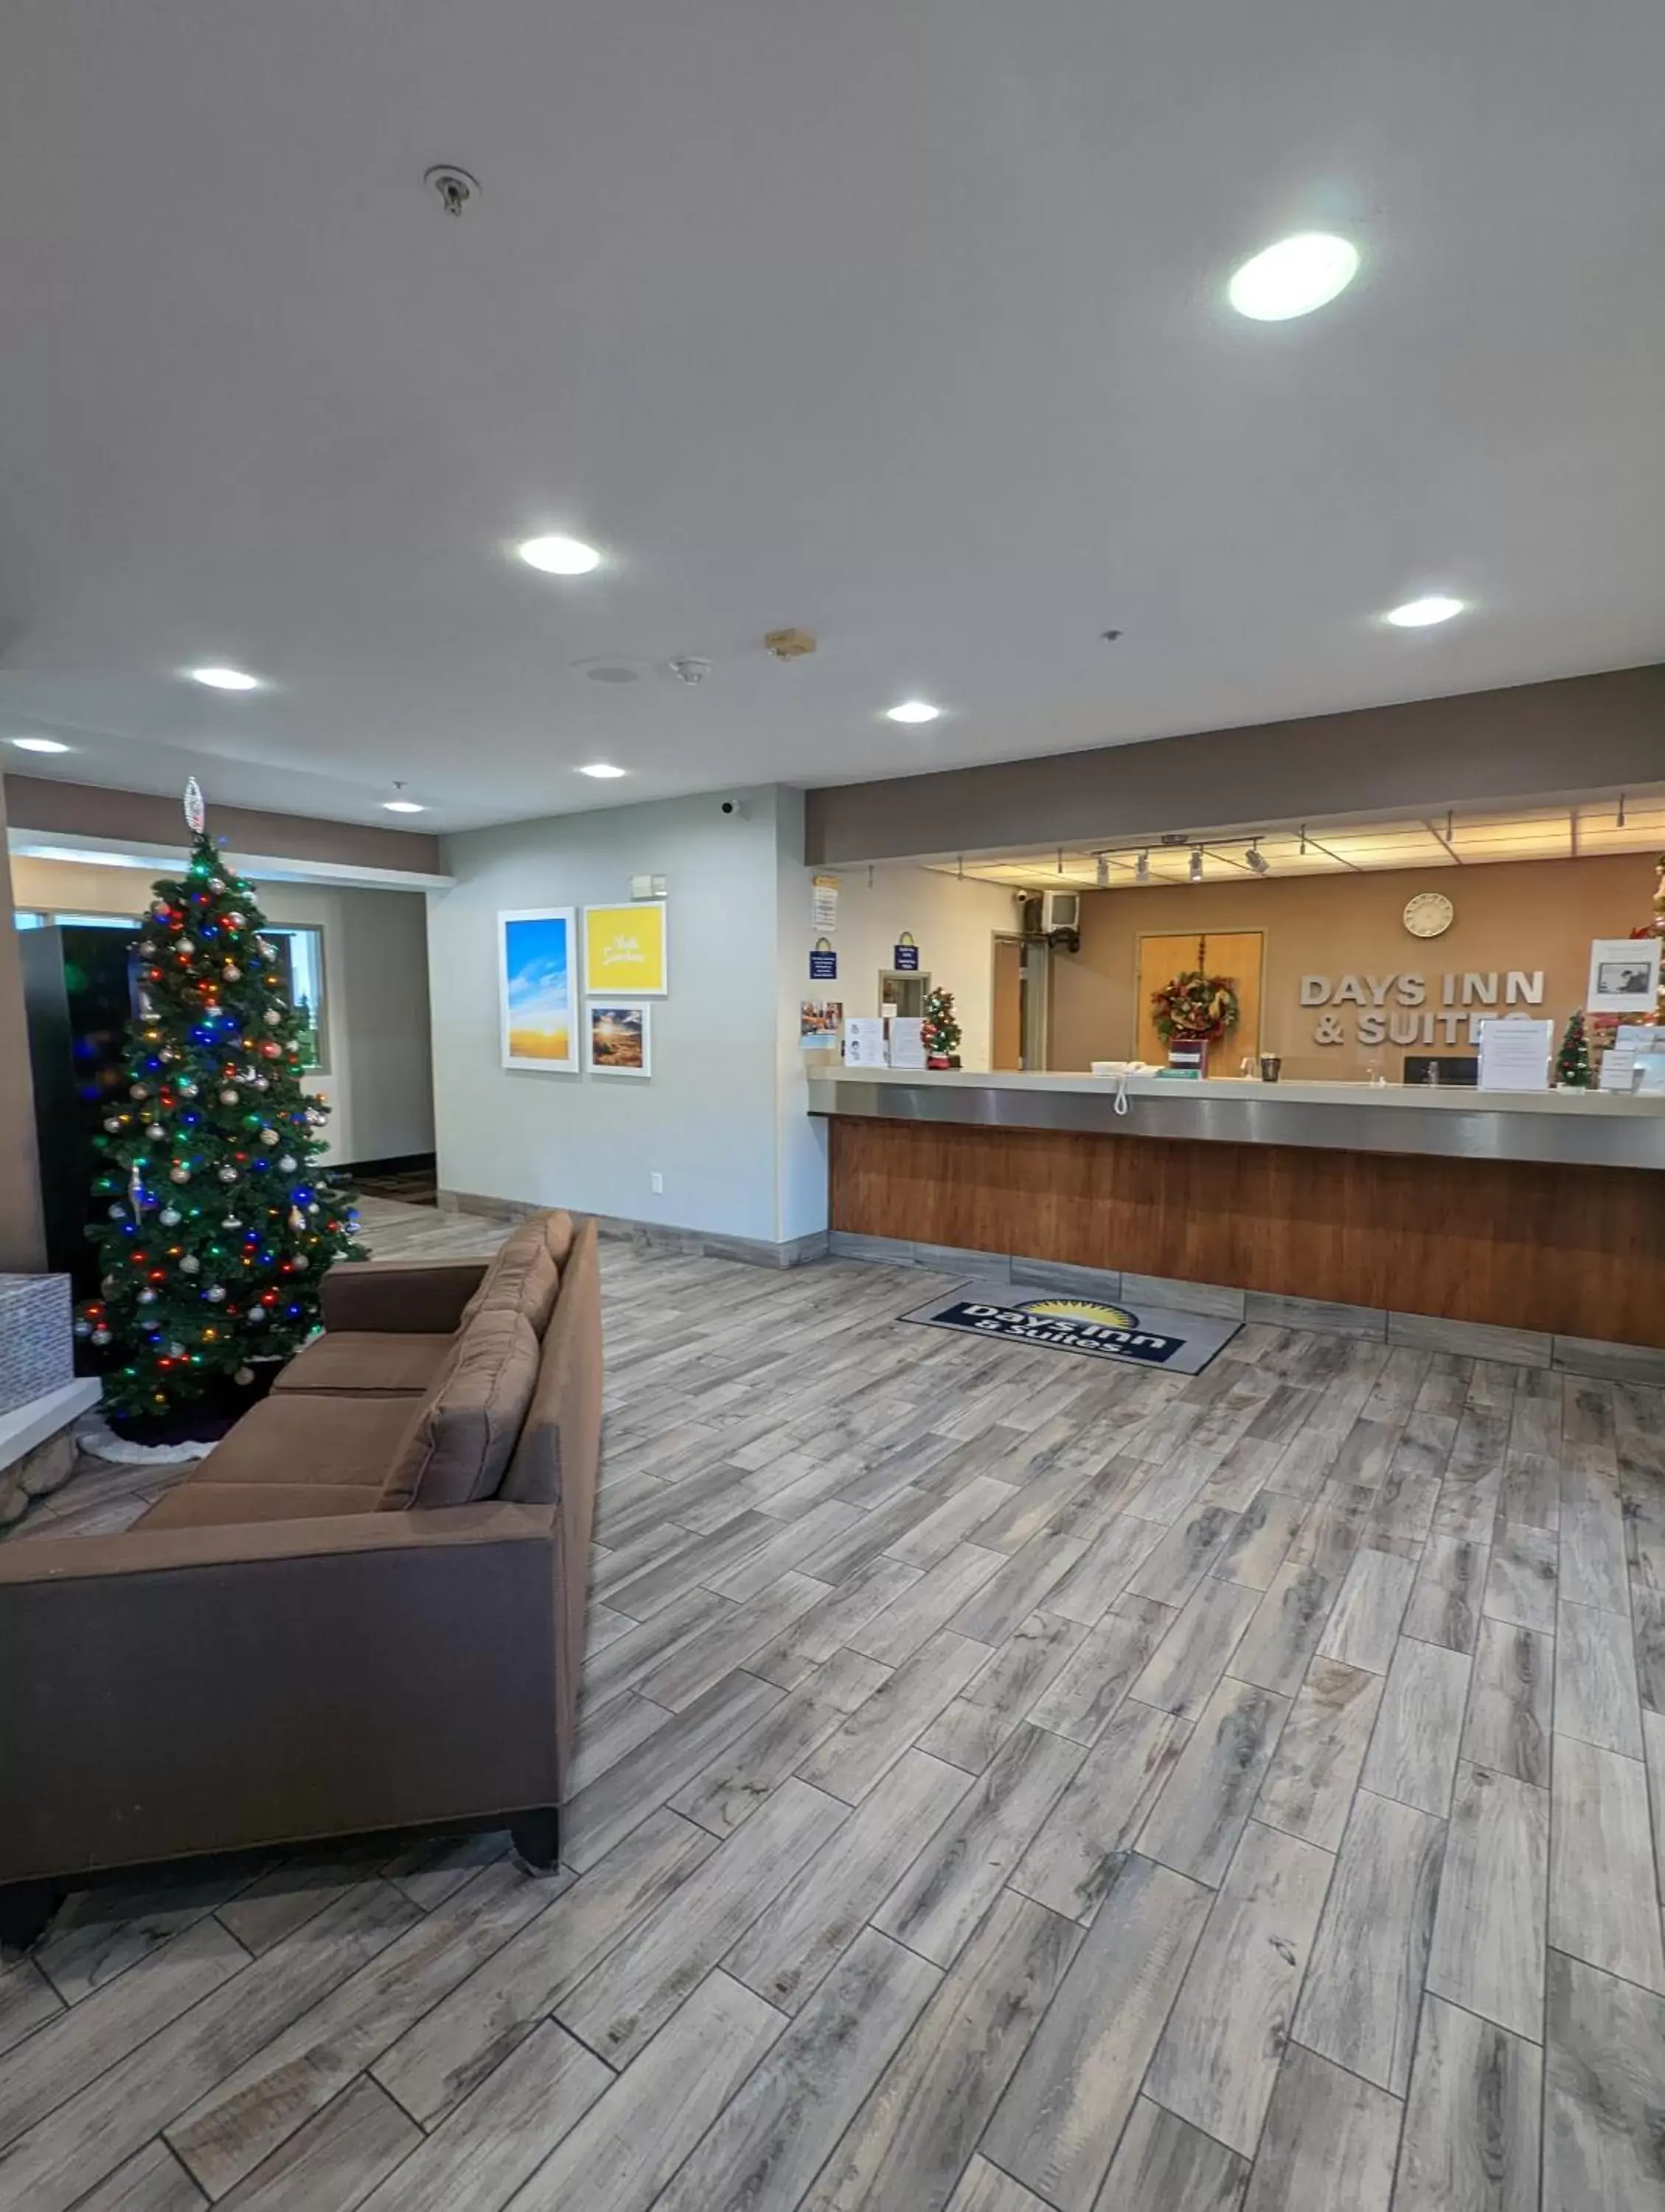 Lobby or reception, Lobby/Reception in Days Inn & Suites by Wyndham Castle Rock